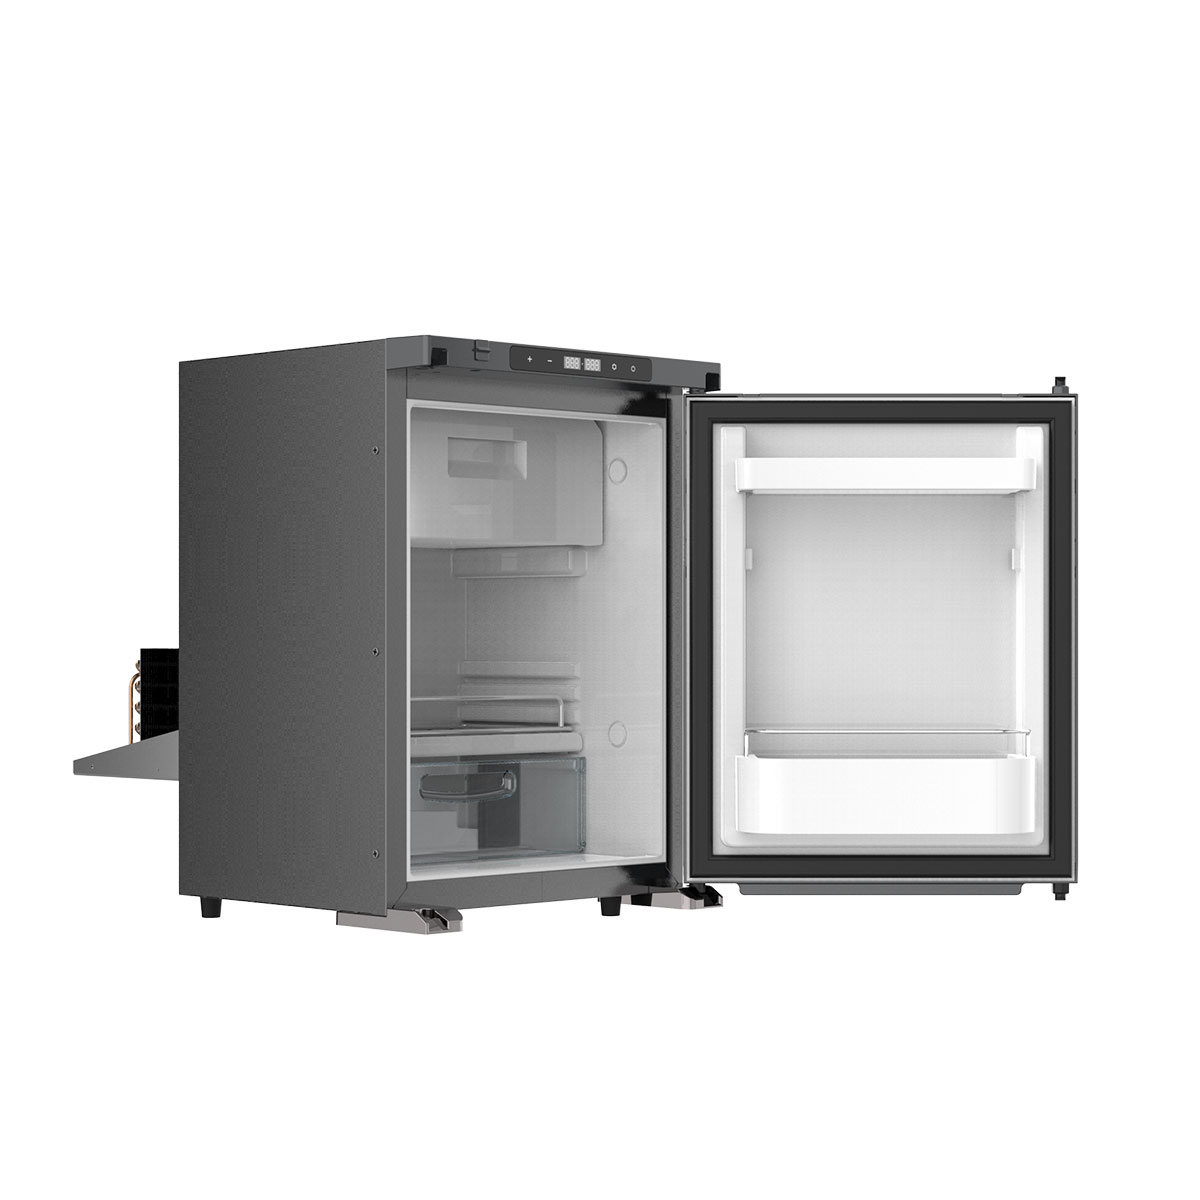 Холодильник MobileComfort MCR-40, встраиваемый компрессорный, 40 литров,12/24В